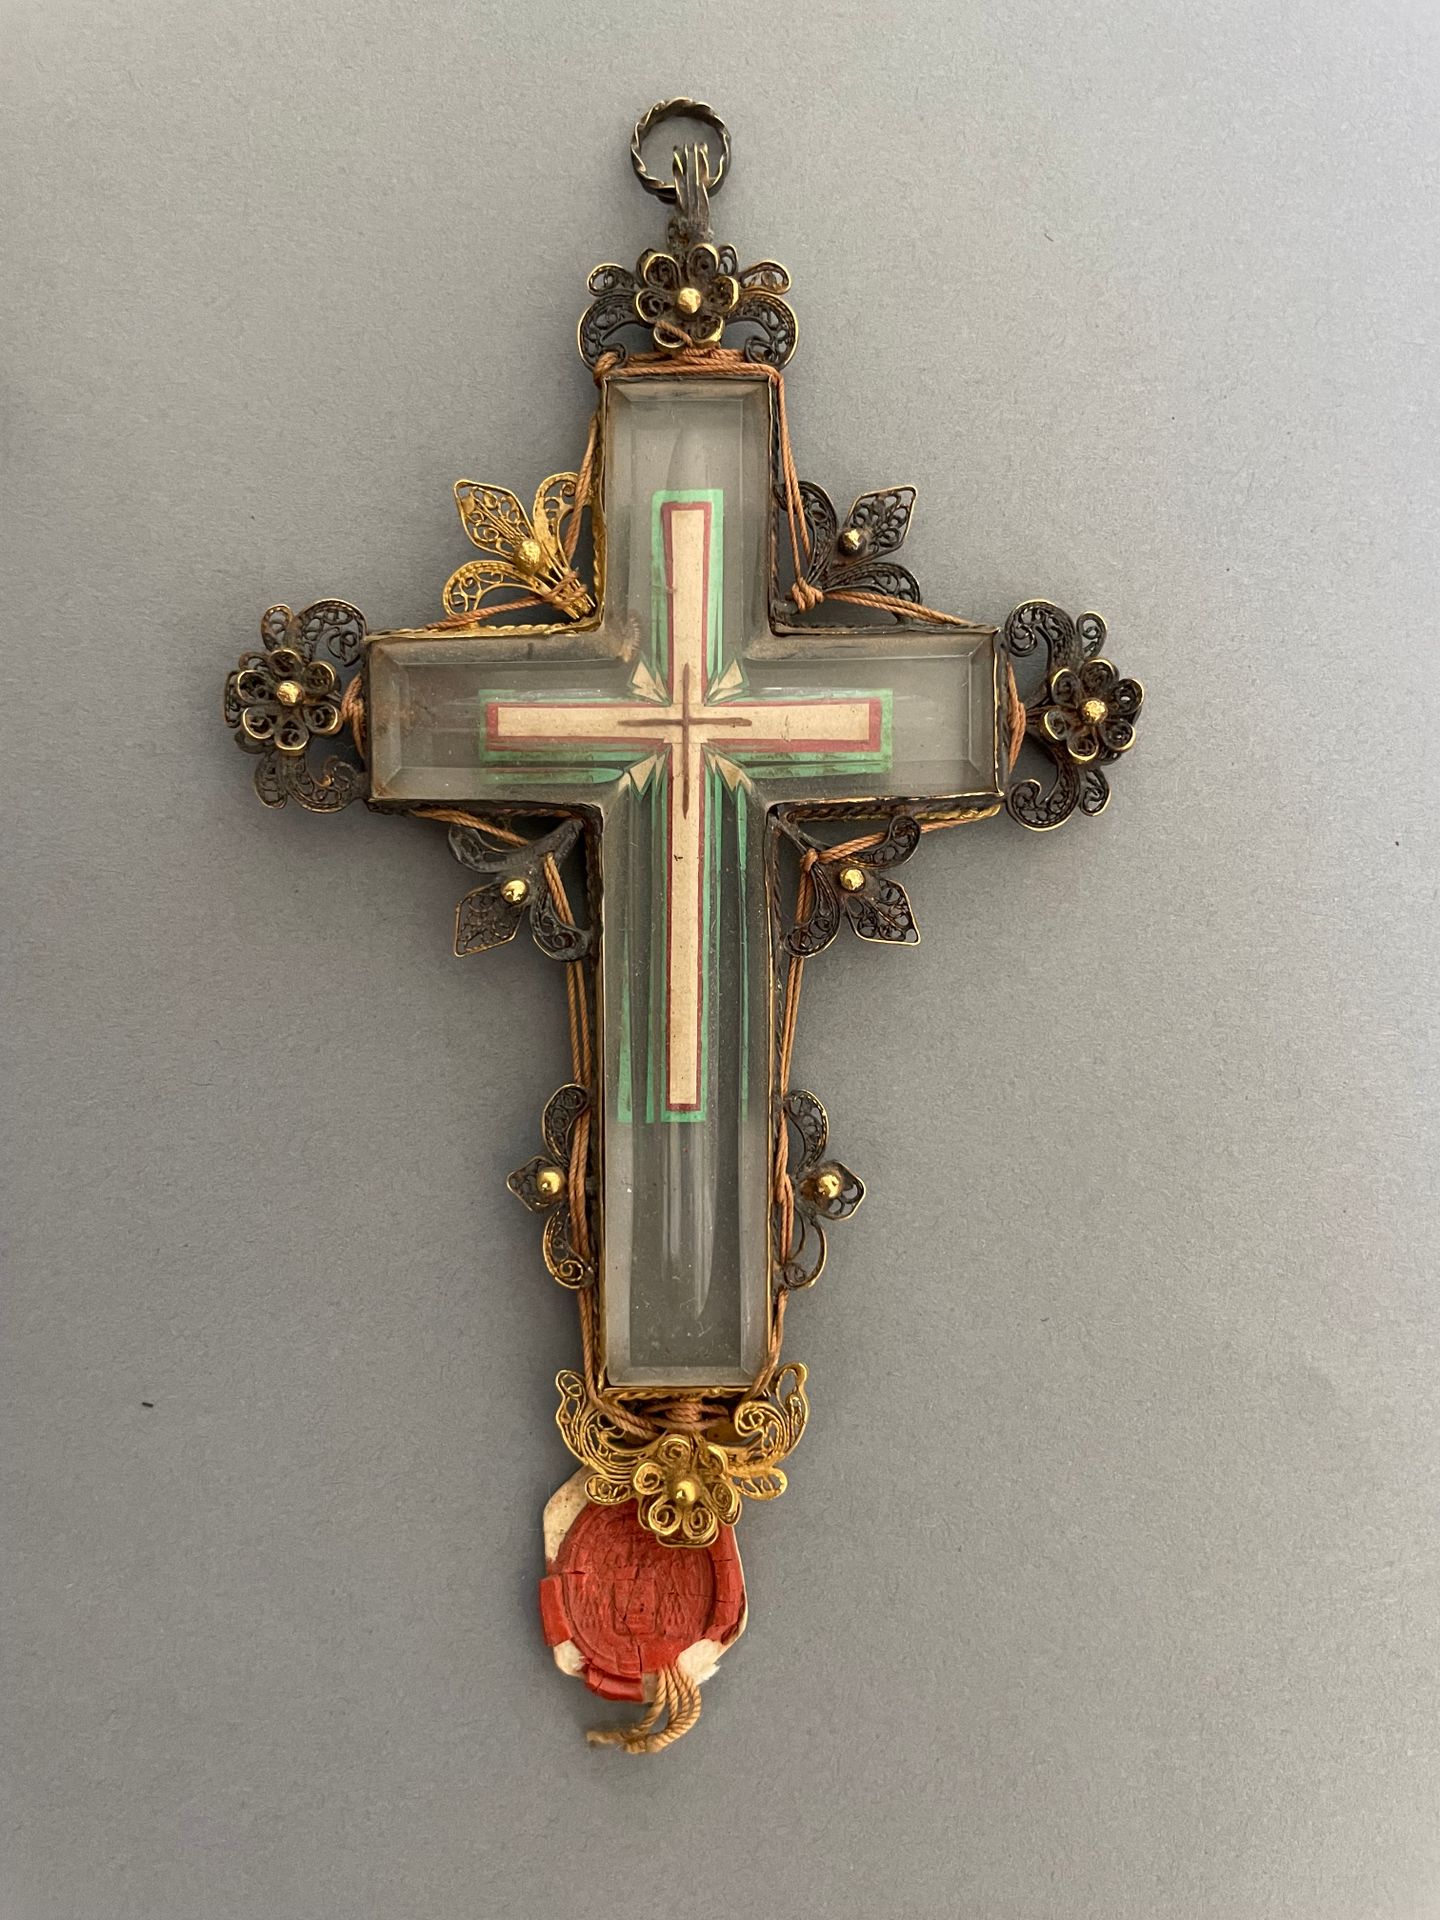 Null 一个水晶十字架吊坠，上面有游丝花纹图案，是vermeil材质的。 
带有红衣主教纹章的蜡封。 
时期：19世纪初
H.10厘米
在它的箱子里。